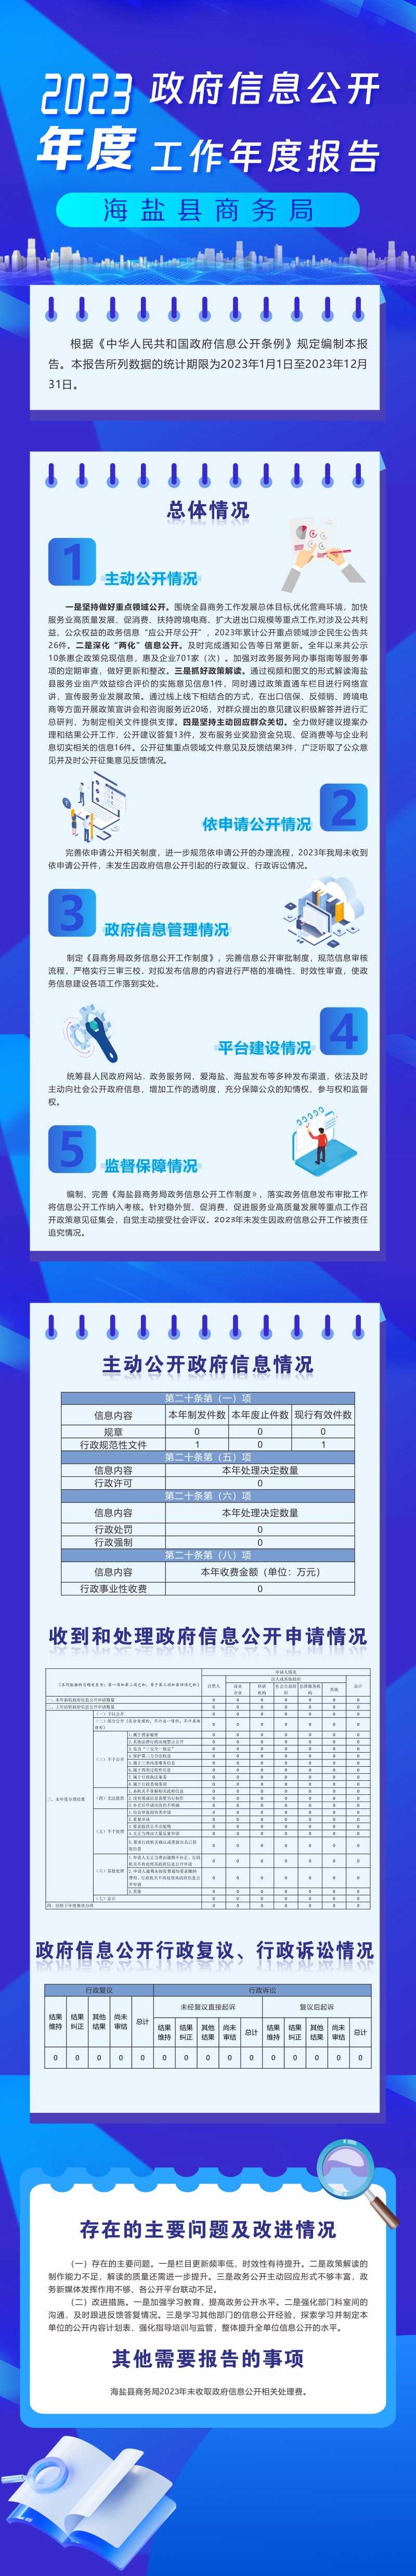 海盐县商务局2023年度政府信息公开工作年度报告（图解）.jpg